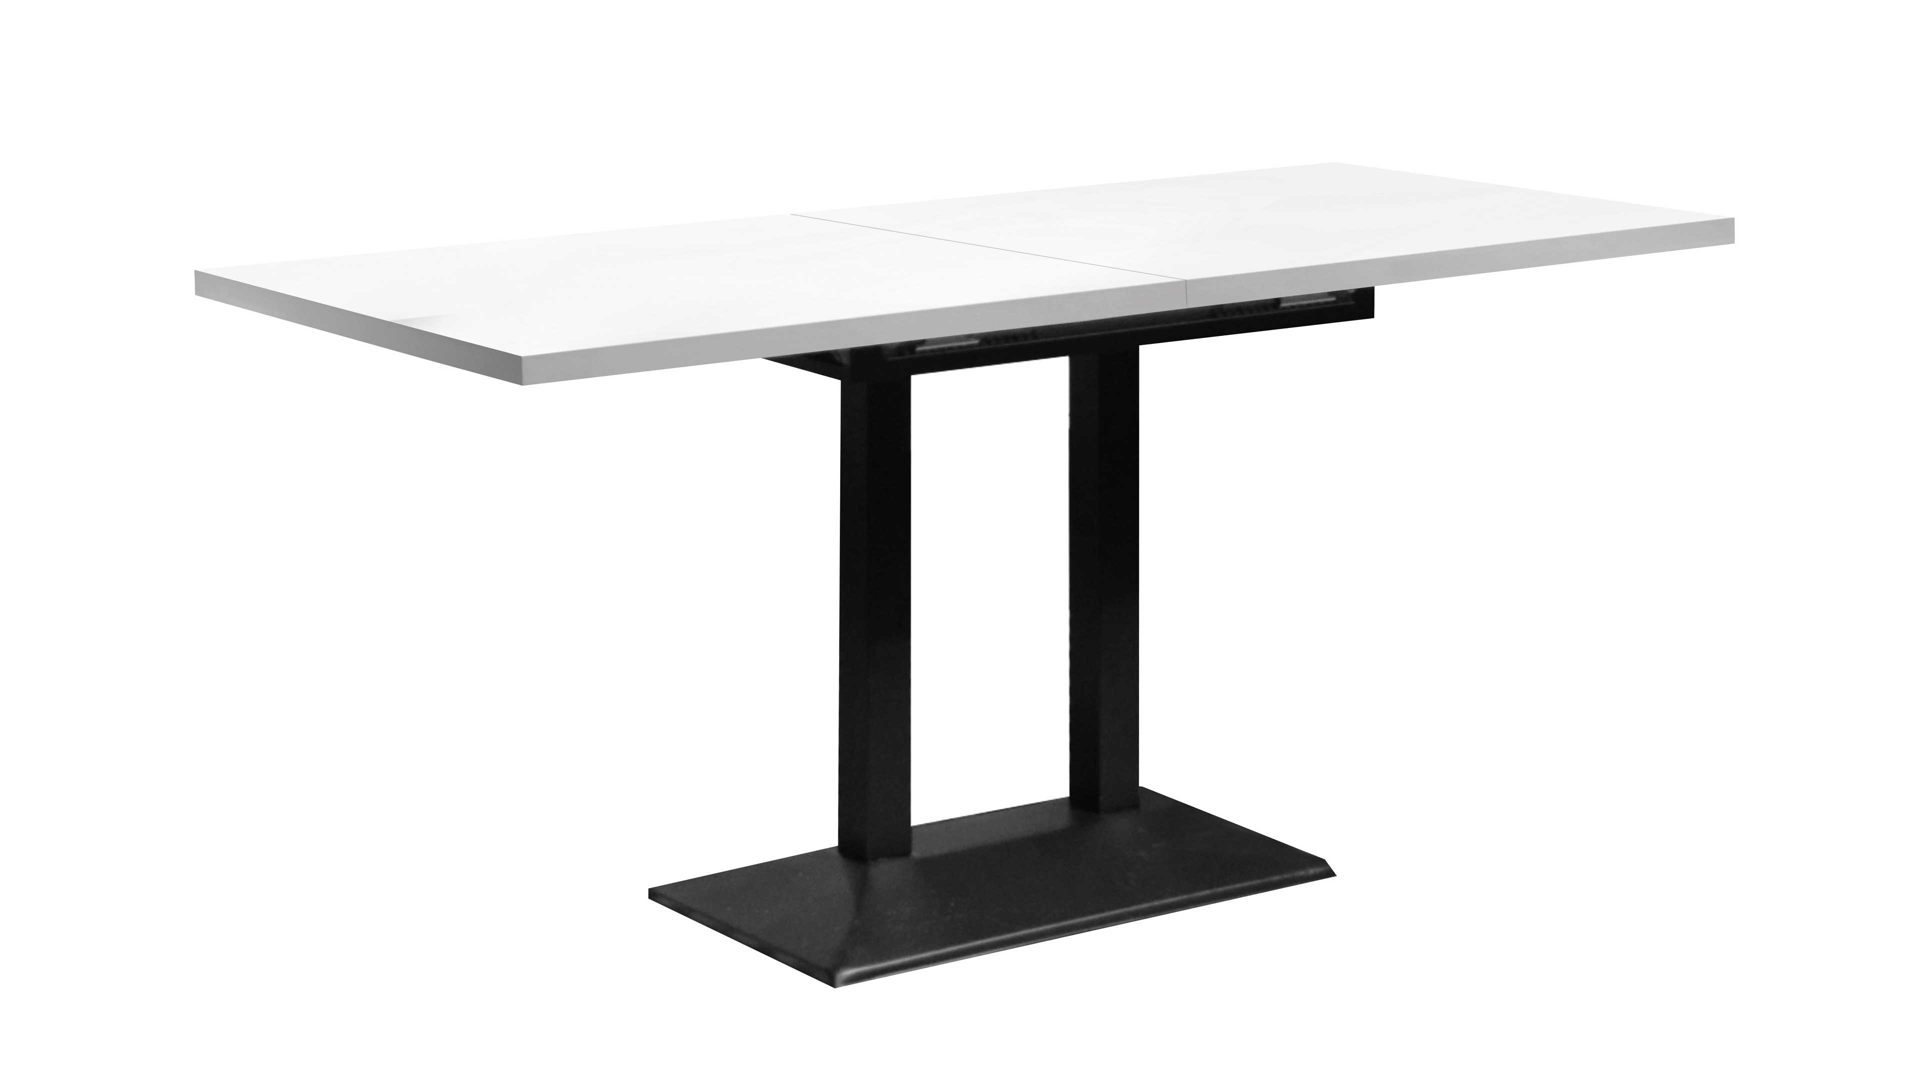 Tisch-Serie Big Bistro - Auszugtisch, Weiß & Schwarz - ca. 120-160 x 65 cm,  Herxheim bei Landau, Karlsruhe, Neustadt